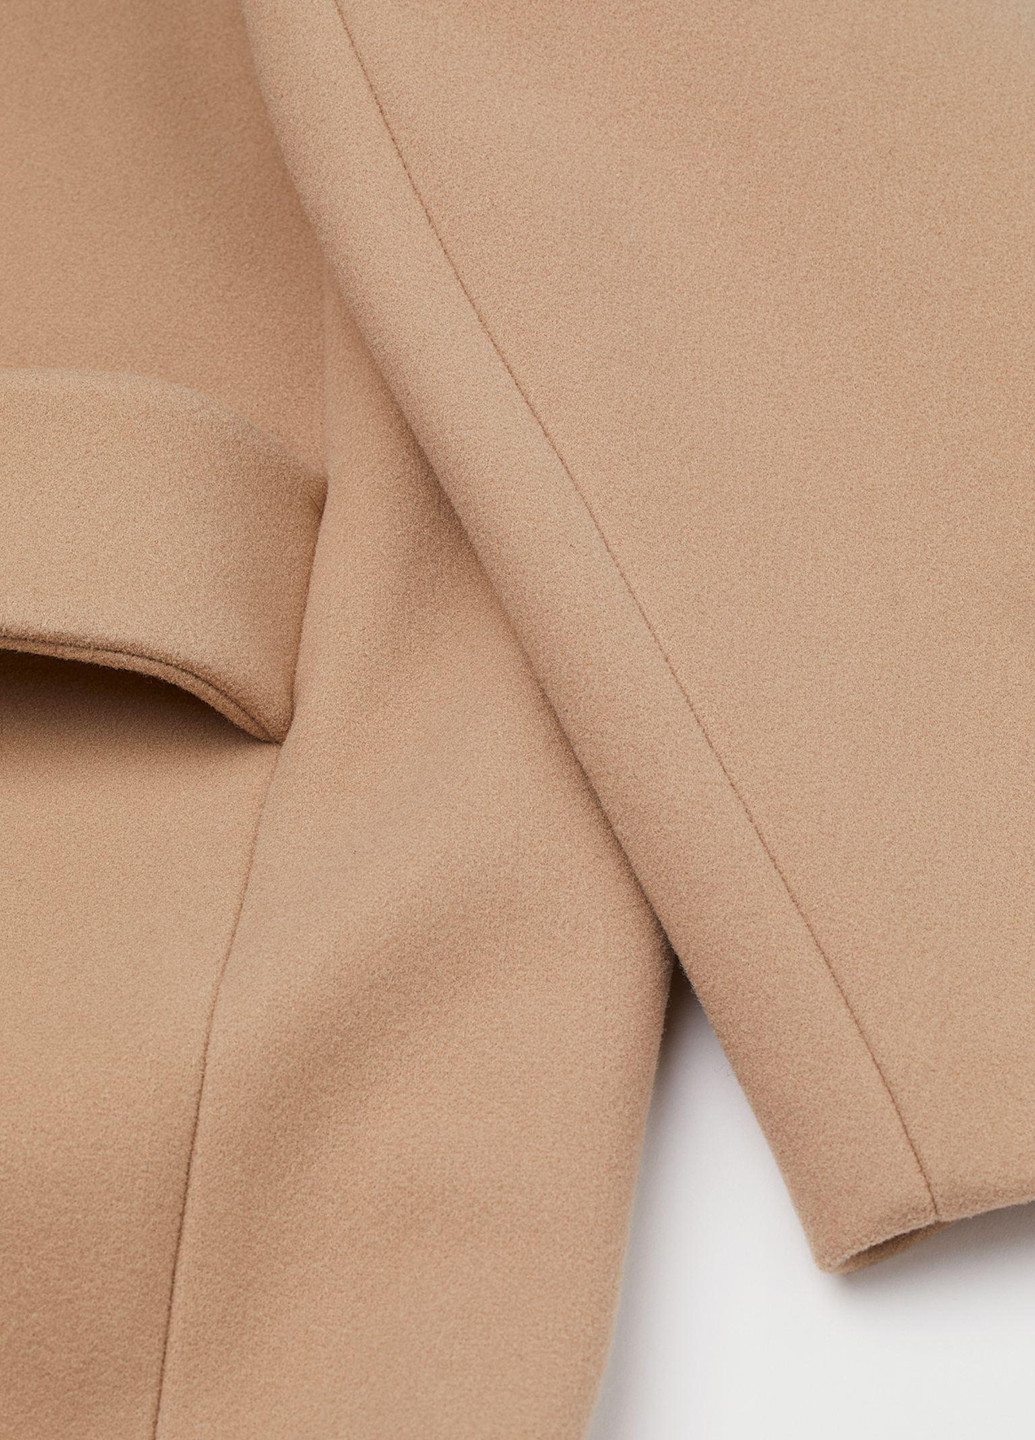 Бежевое демисезонное Пальто прямого кроя длиной до икры из мягкой ткани с начесом. Эта модель имеет воротник с лацканами, оверсайз H&M